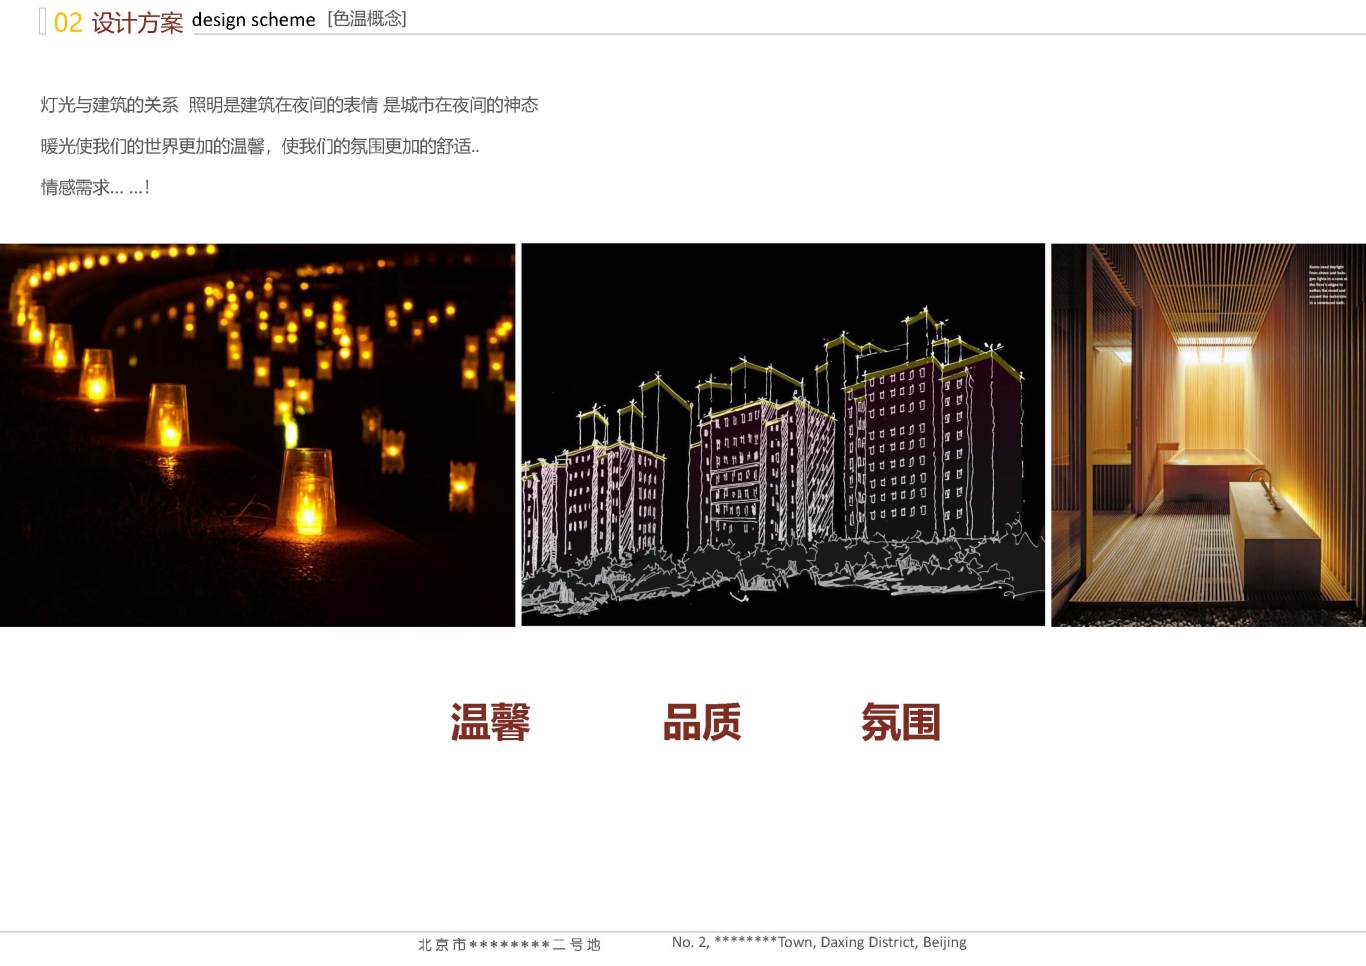 北京市大興區*****二號地夜景照明項目案例圖14